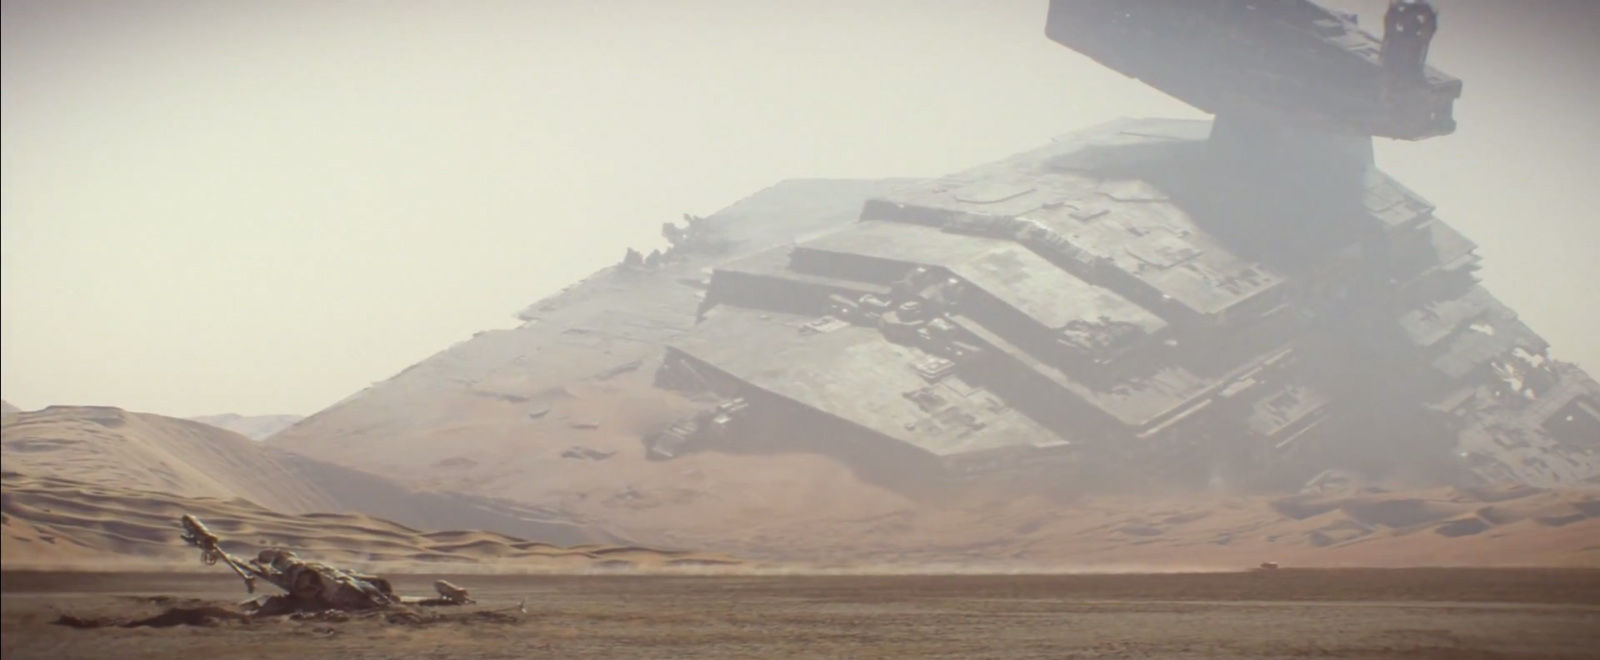 Star Wars Trailer Imperial Destroyer Crashed